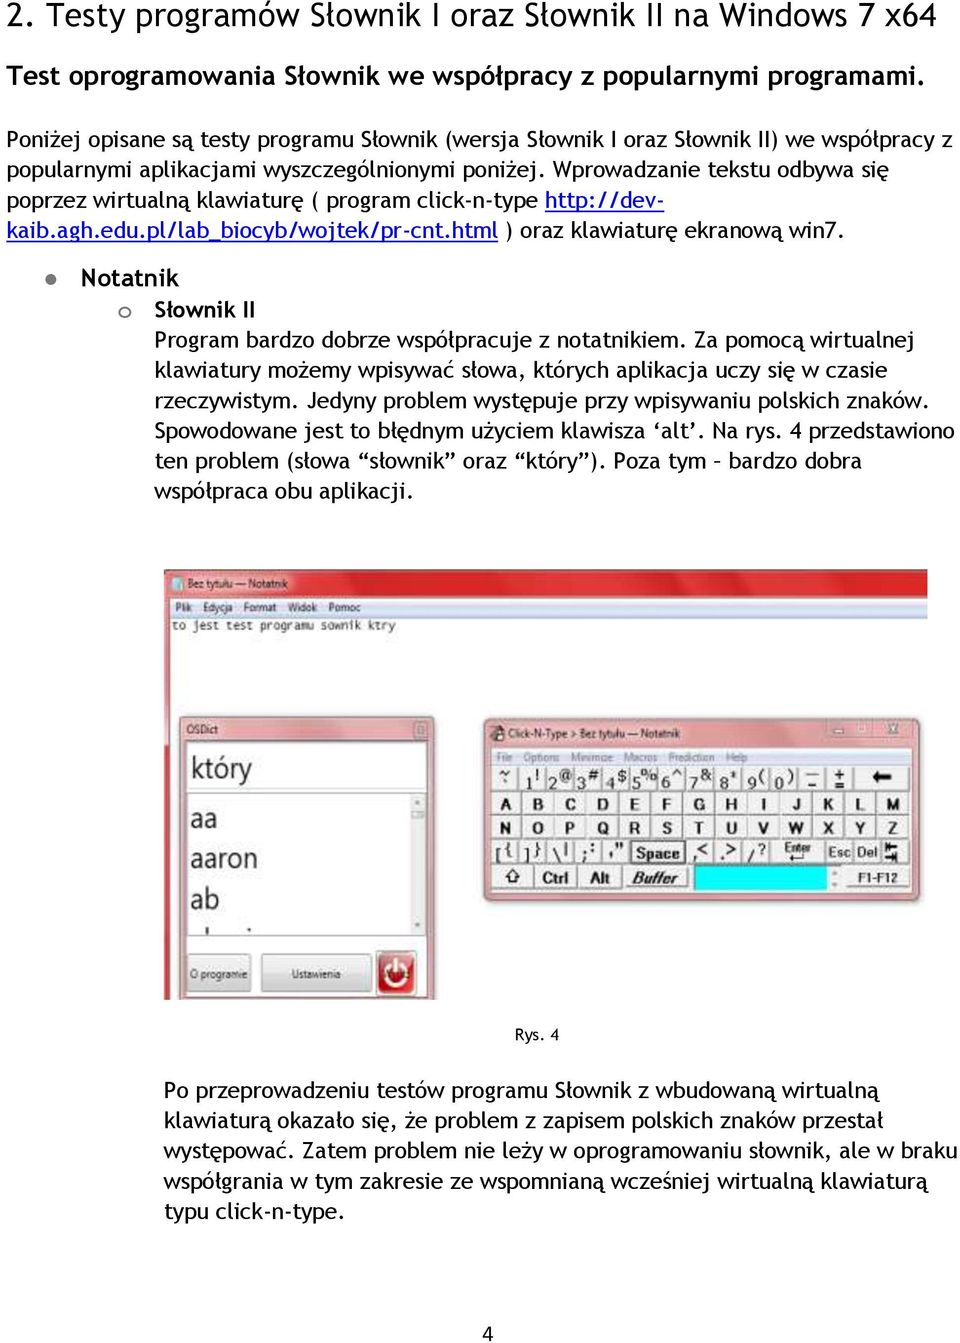 Wprowadzanie tekstu odbywa się poprzez wirtualną klawiaturę ( program click-n-type http://devkaib.agh.edu.pl/lab_biocyb/wojtek/pr-cnt.html ) oraz klawiaturę ekranową win7.